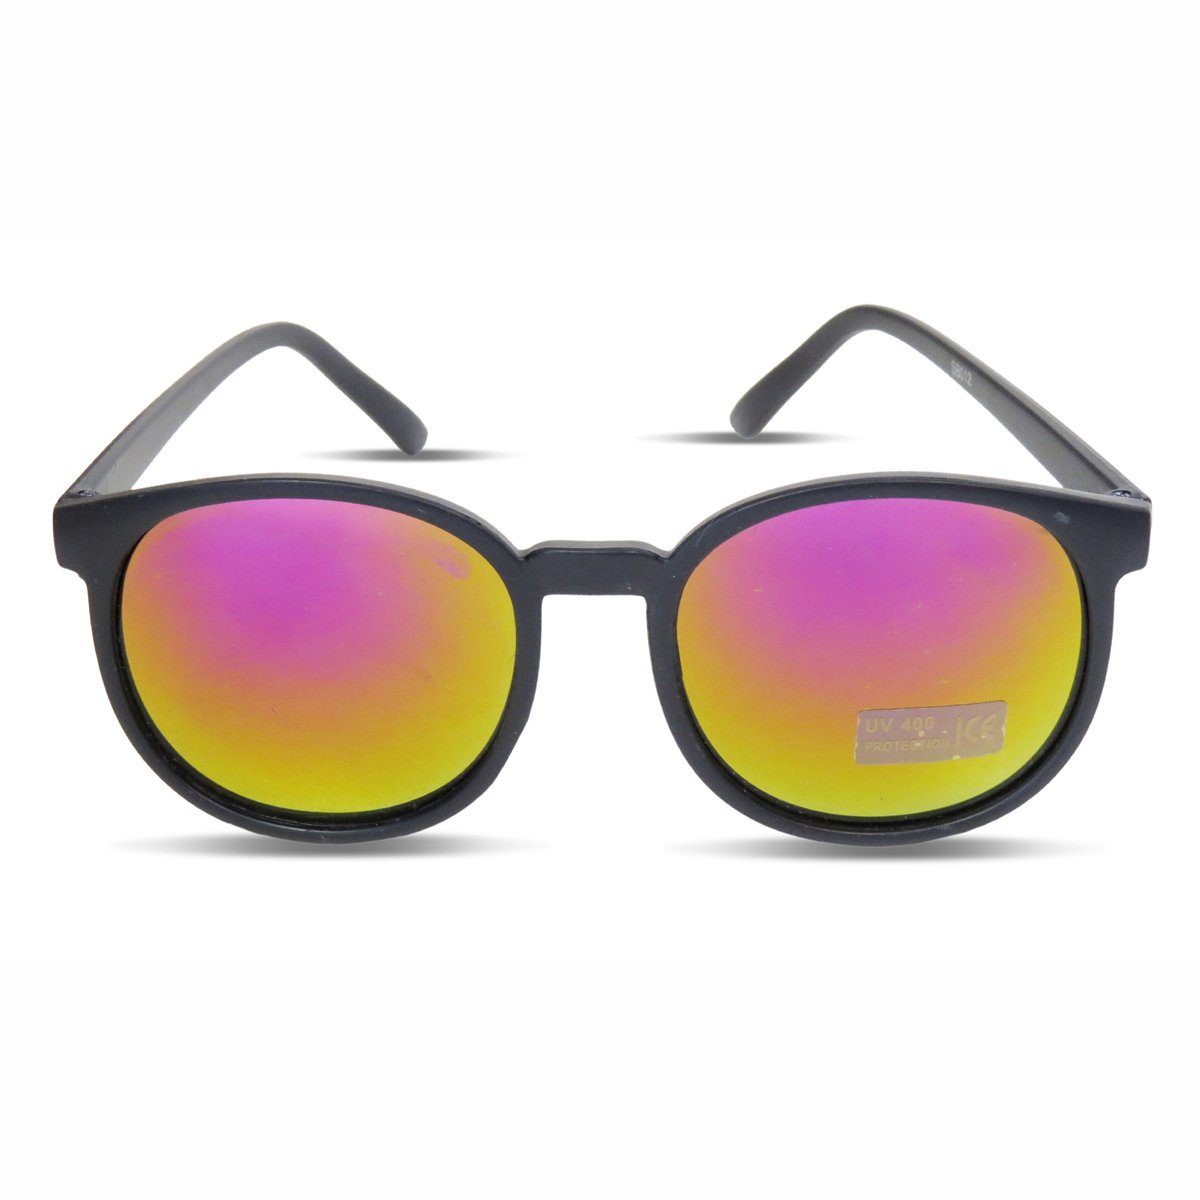 Sonia Originelli Sonnenbrille Sonnenbrille Verspiegelt Trend Sommer Partybrille schwarz Onesize